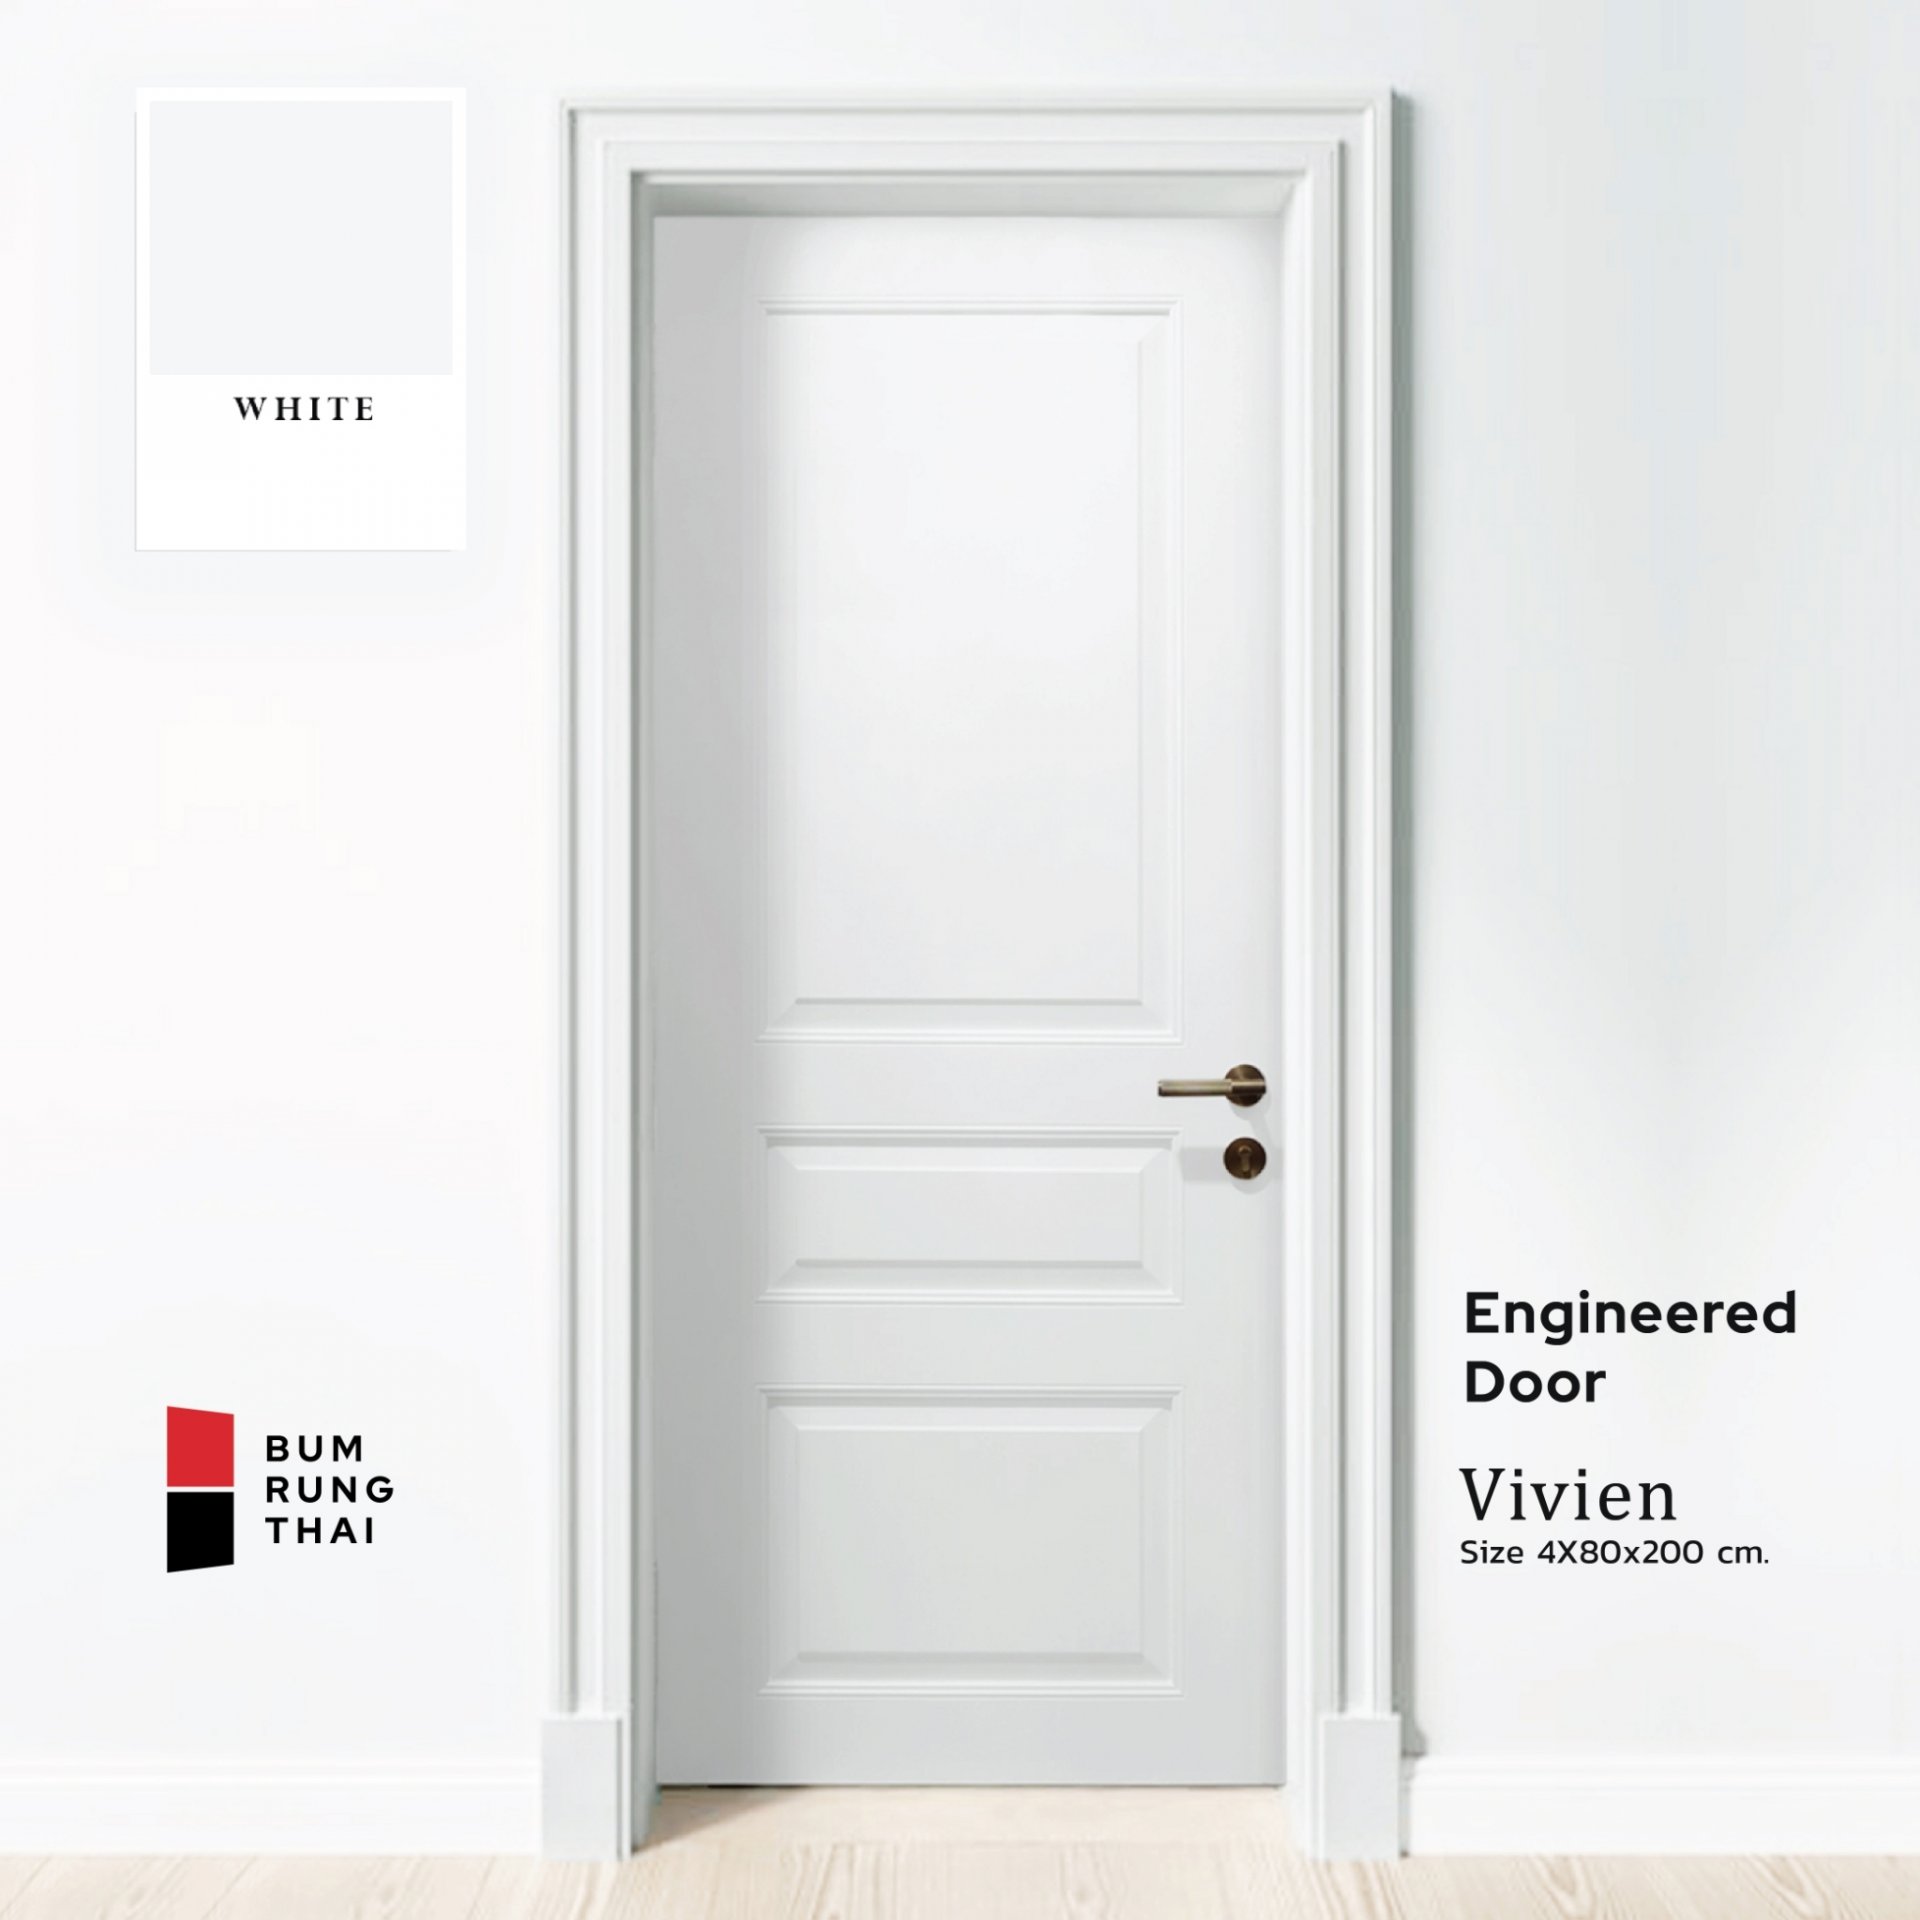 Engineered Door - VIVIAN